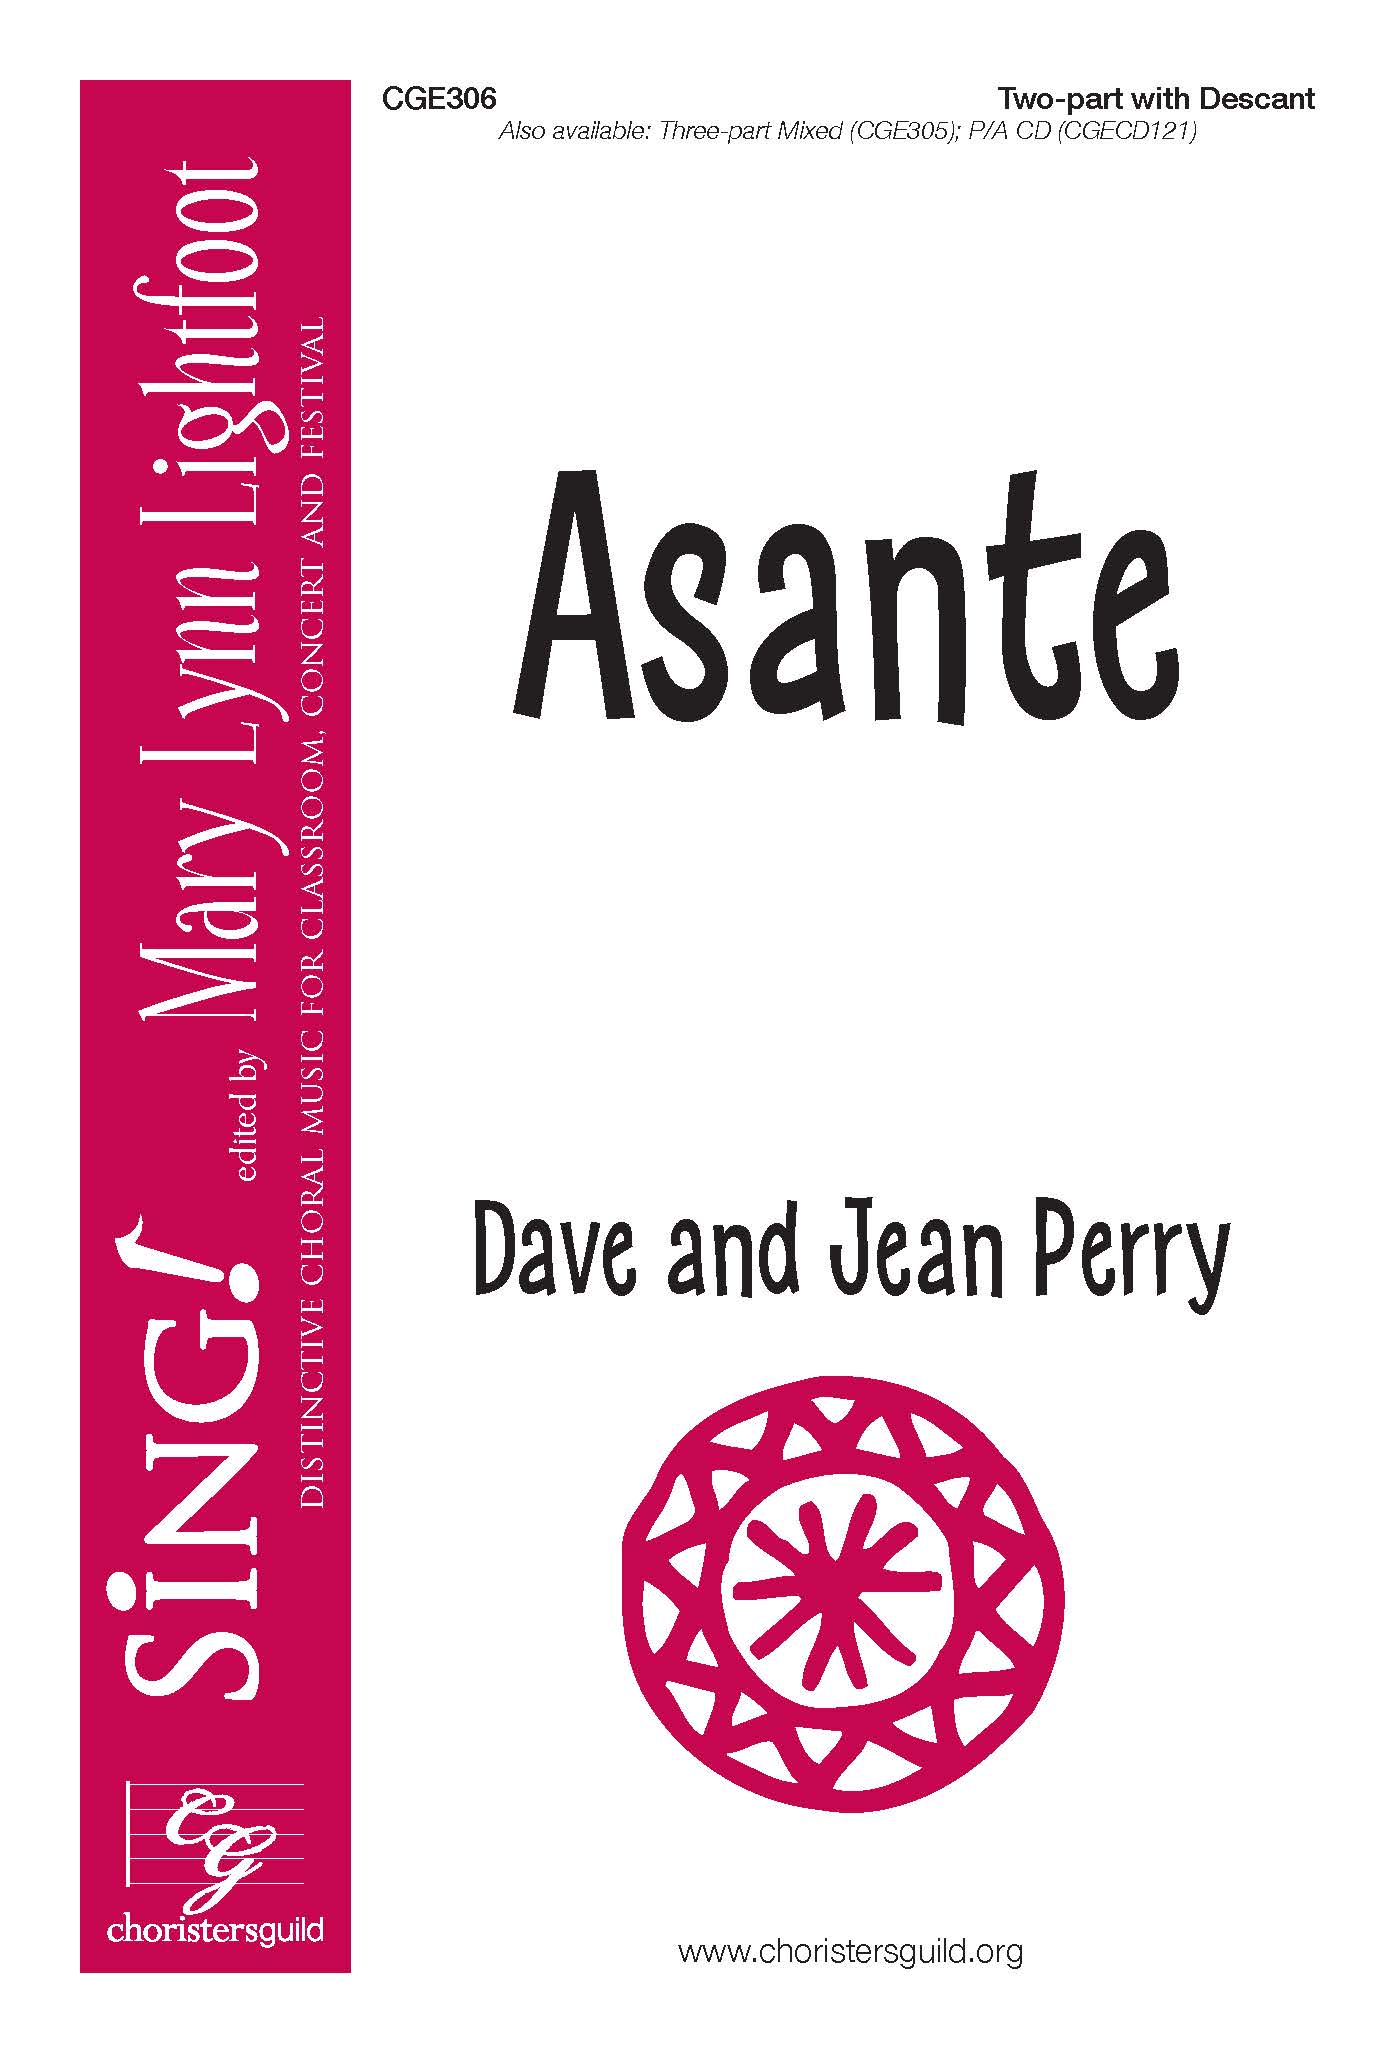 Asante - Two-part